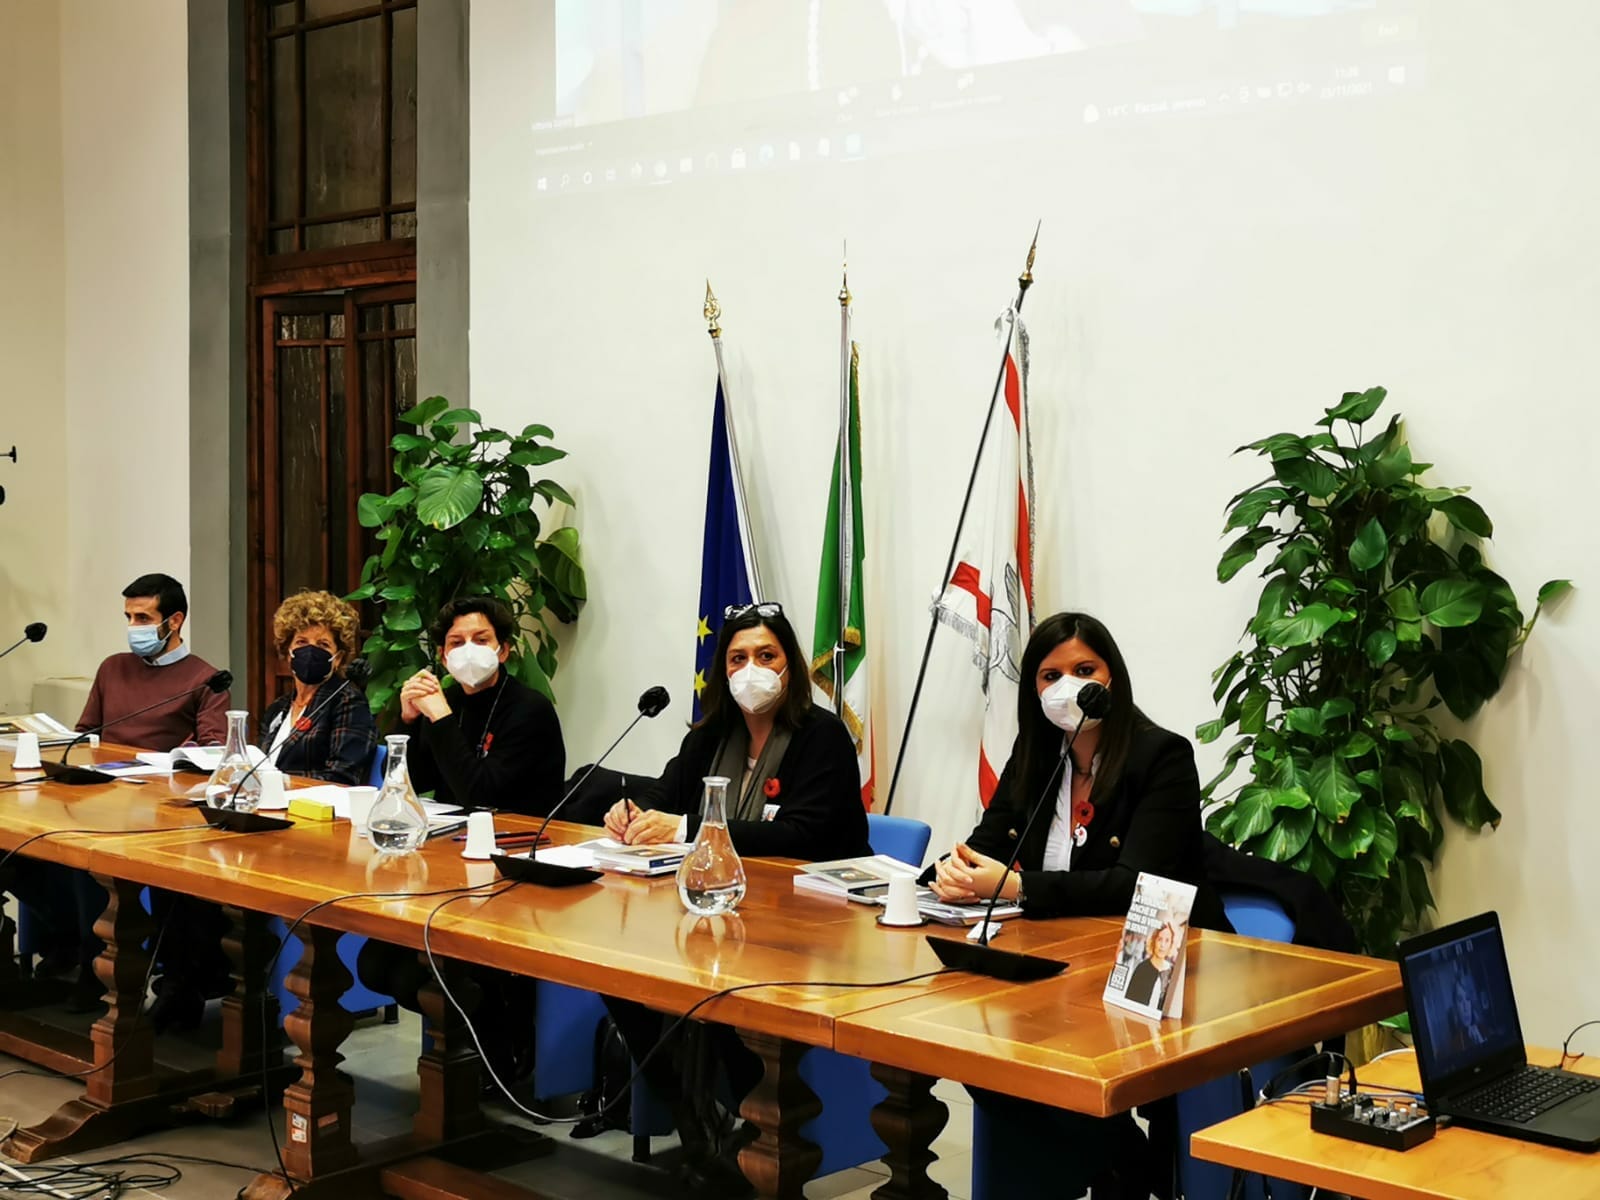 Violenza di genere in Toscana, 121 femminicidi in 15 anni con 41 minori rimasti orfani